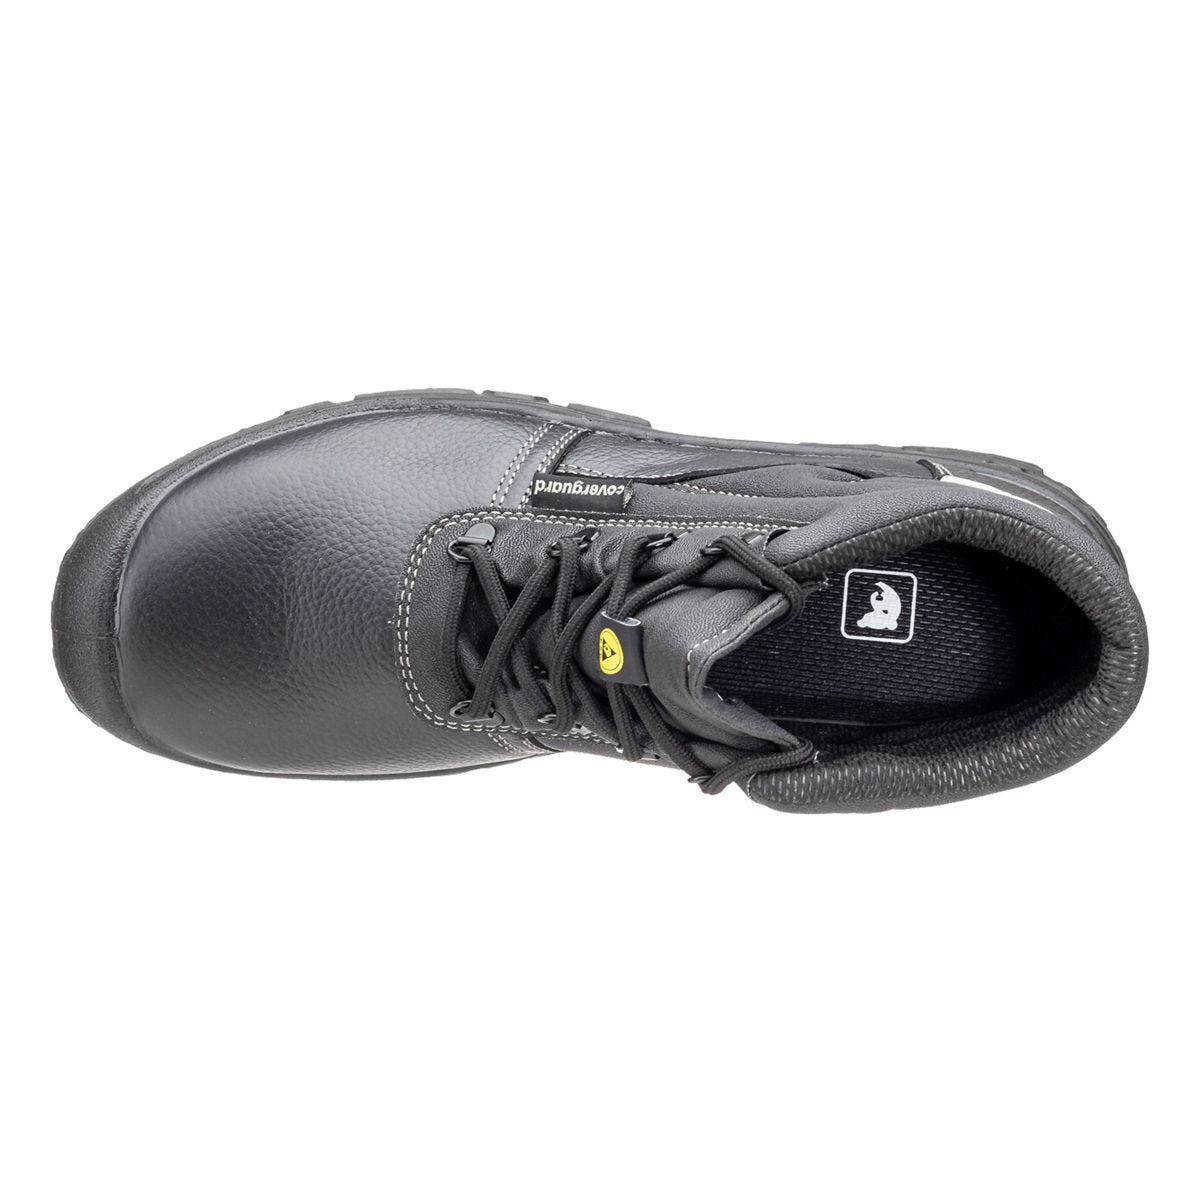 Chaussures de sécurité hautes Azurite II S3 ESD noir - Coverguard - Taille 42 3